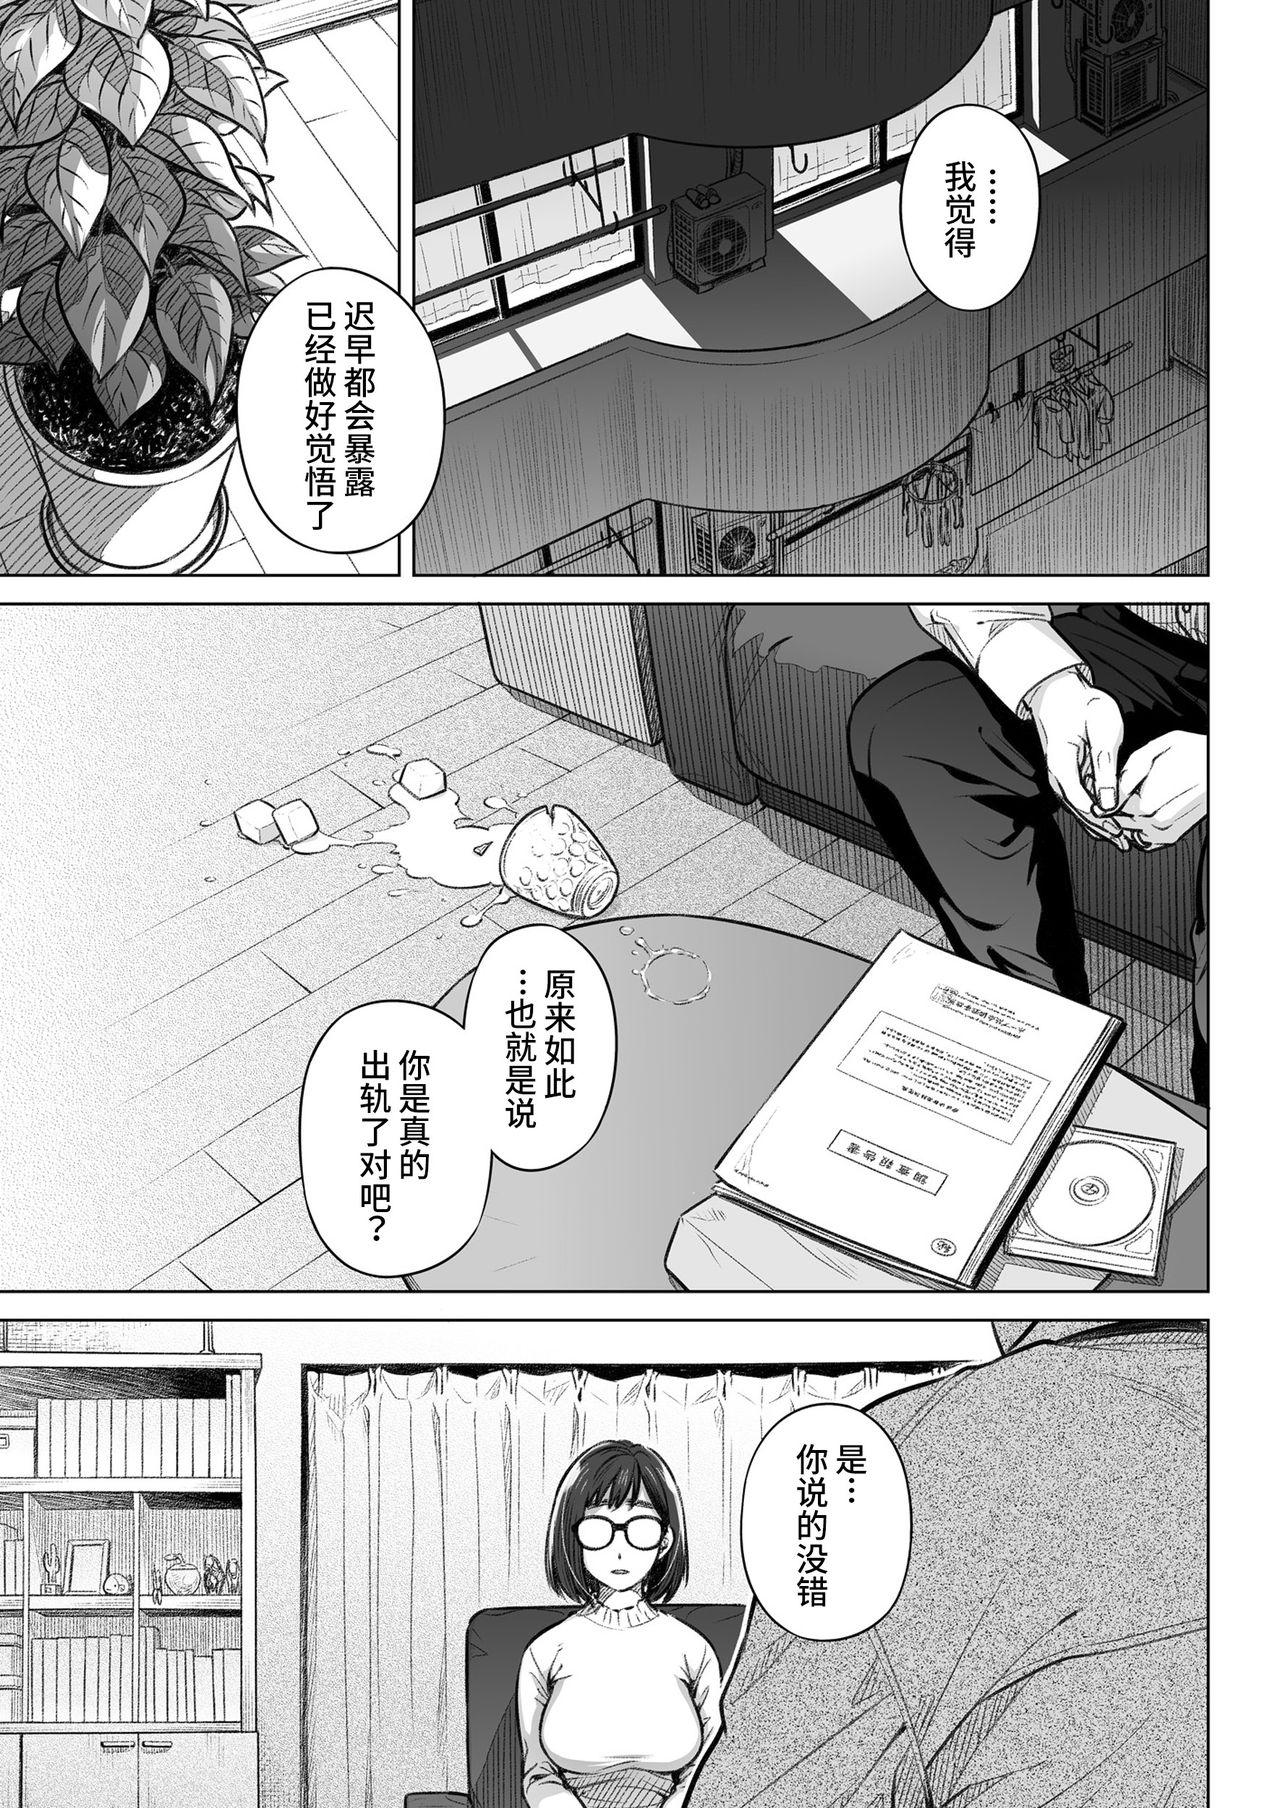 Strip Kurata Akiko no Kokuhaku 1 - Confession of Akiko kurata Epsode 1 | 仓田有稀子的告白 第1话 - Original Gay Cock - Page 4